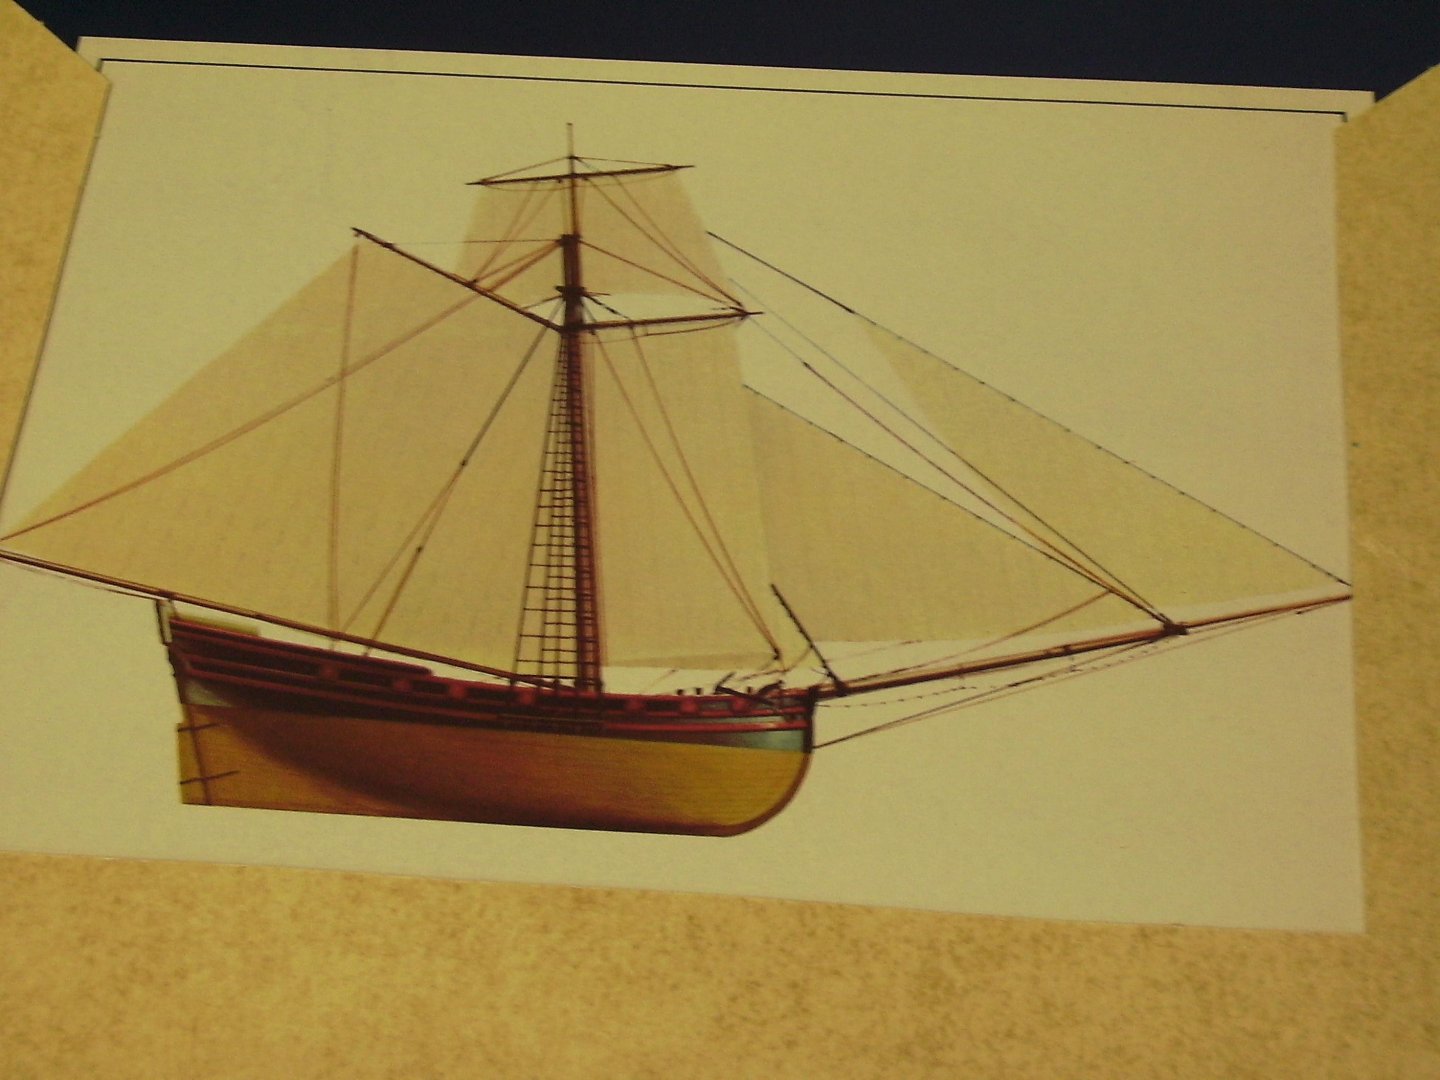 Time Life Books - Sailing Ships of the High Seas ( 4 platen A4 zeilschepen kleur)